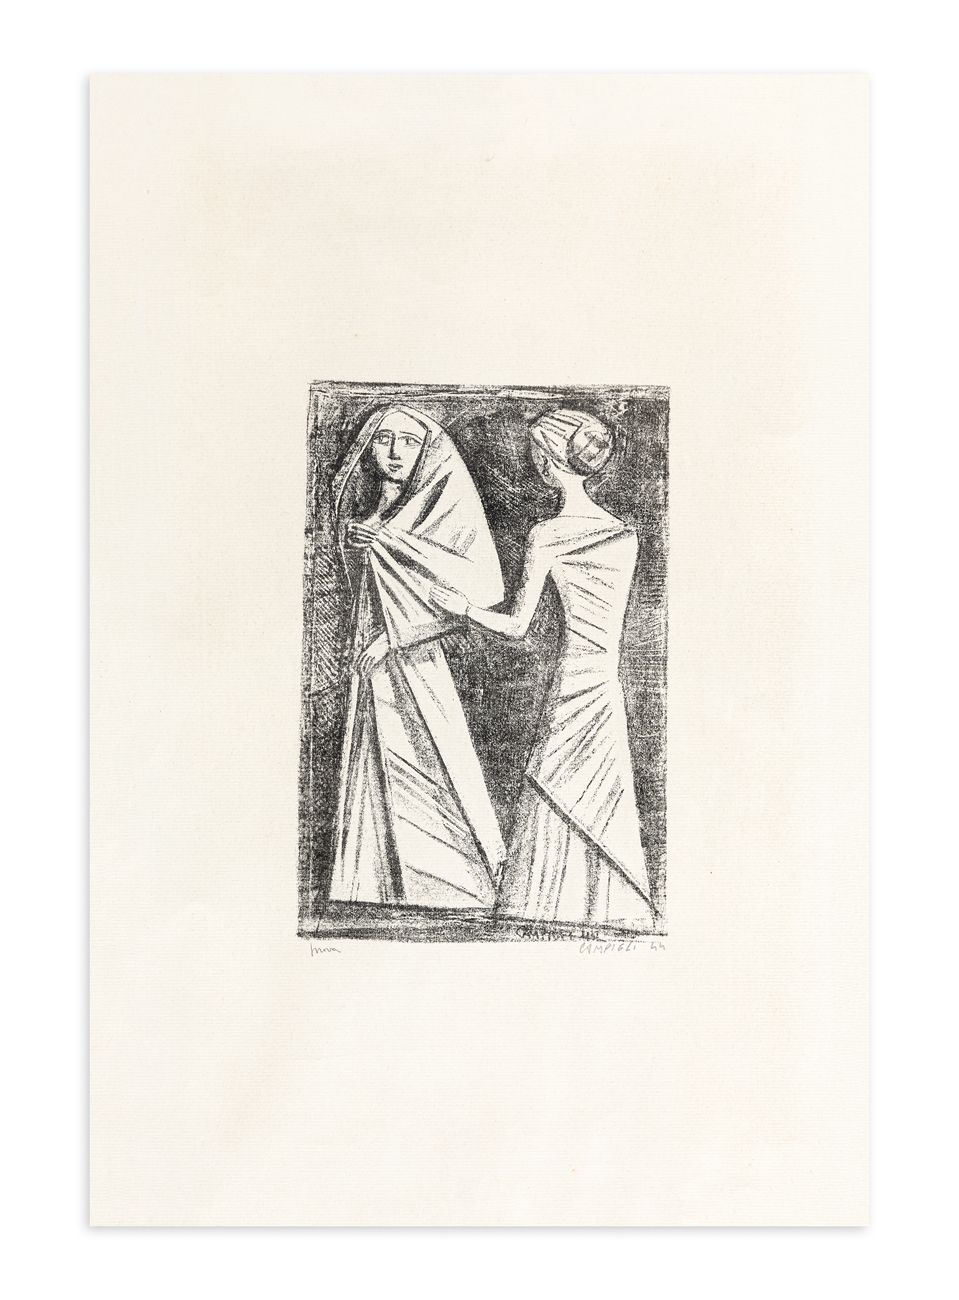 MASSIMO CAMPIGLI (1895-1971) - Preghiera ad Afrodite, 1944 石版画

48x32厘米

正面有铅笔签名&hellip;